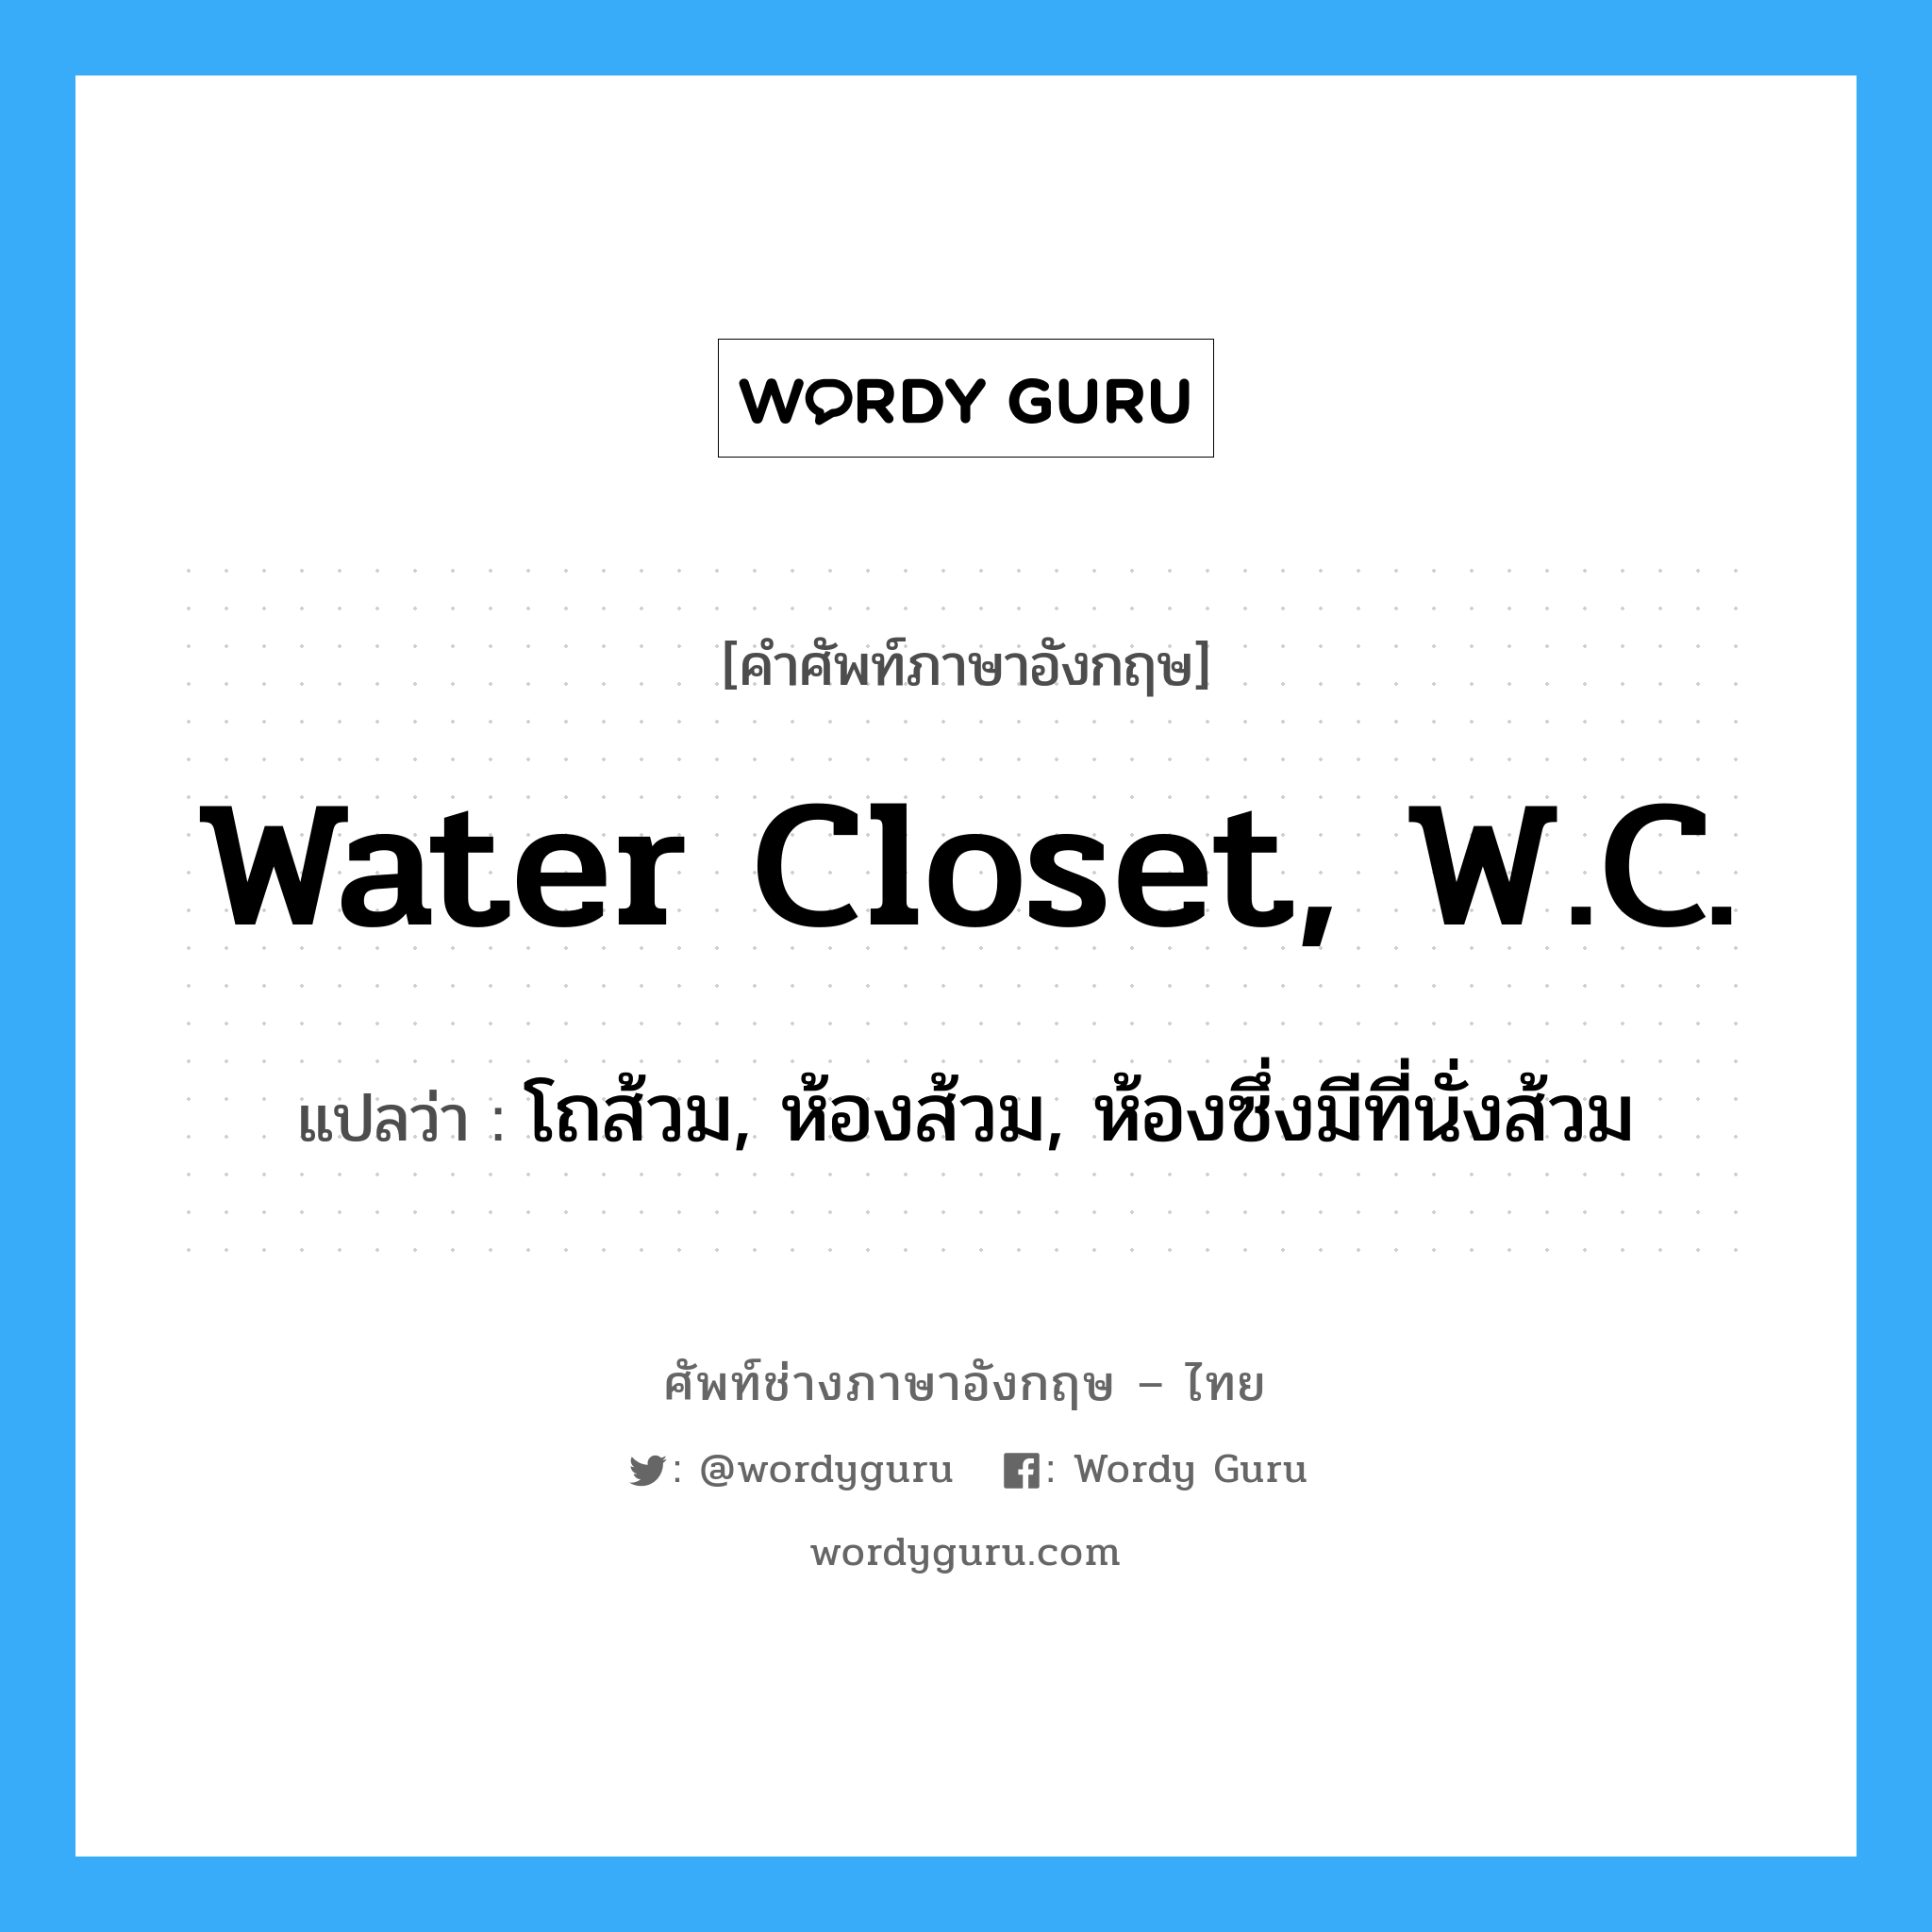 water closet, W.C. แปลว่า?, คำศัพท์ช่างภาษาอังกฤษ - ไทย water closet, W.C. คำศัพท์ภาษาอังกฤษ water closet, W.C. แปลว่า โถส้วม, ห้องส้วม, ห้องซึ่งมีที่นั่งส้วม